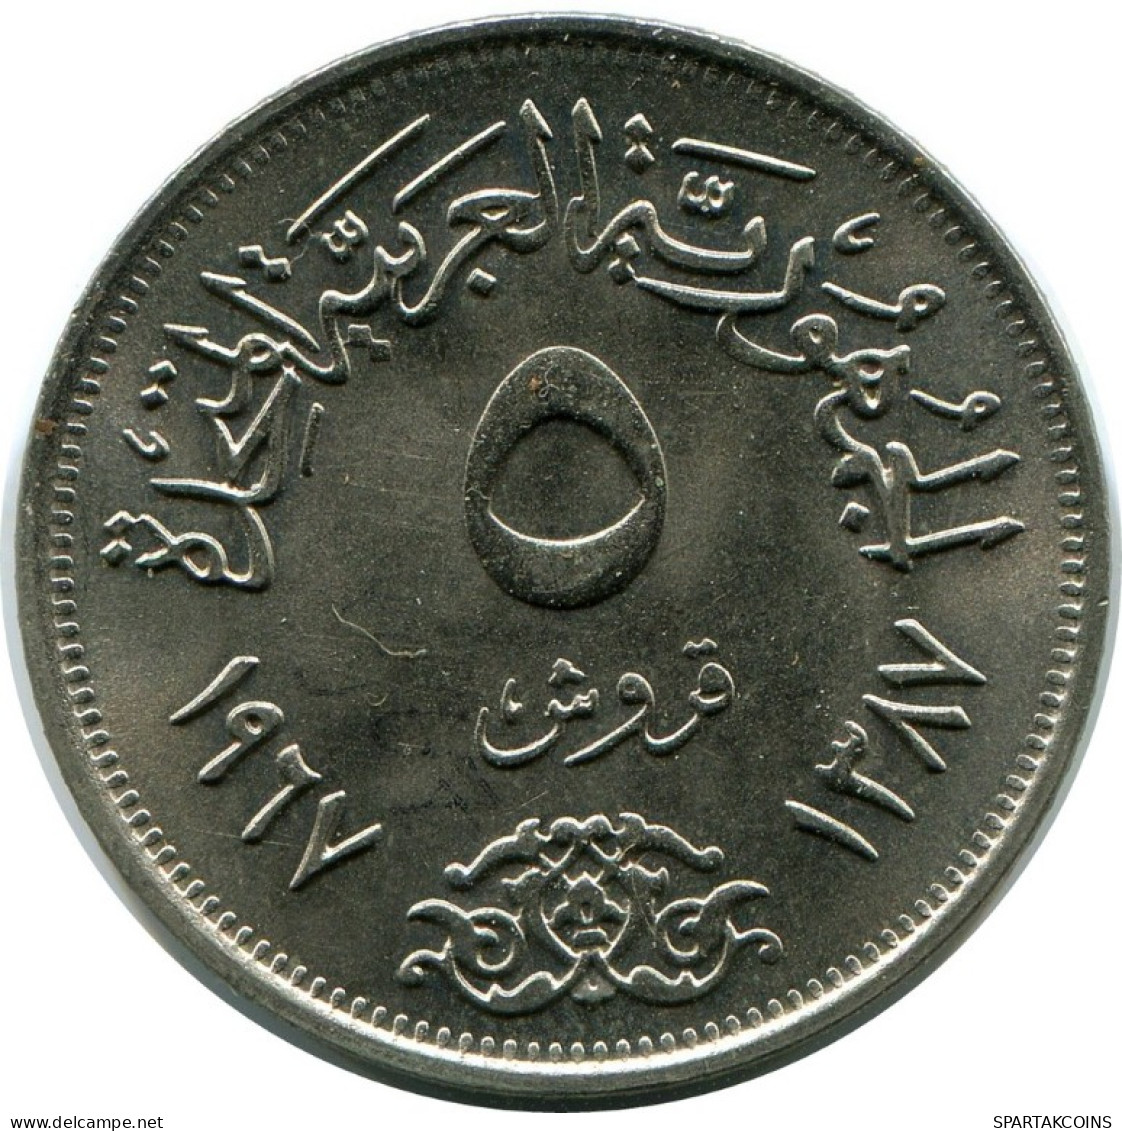 5 QIRSH 1967 EGYPT Islamic Coin #AH659.3.E.A - Egypt